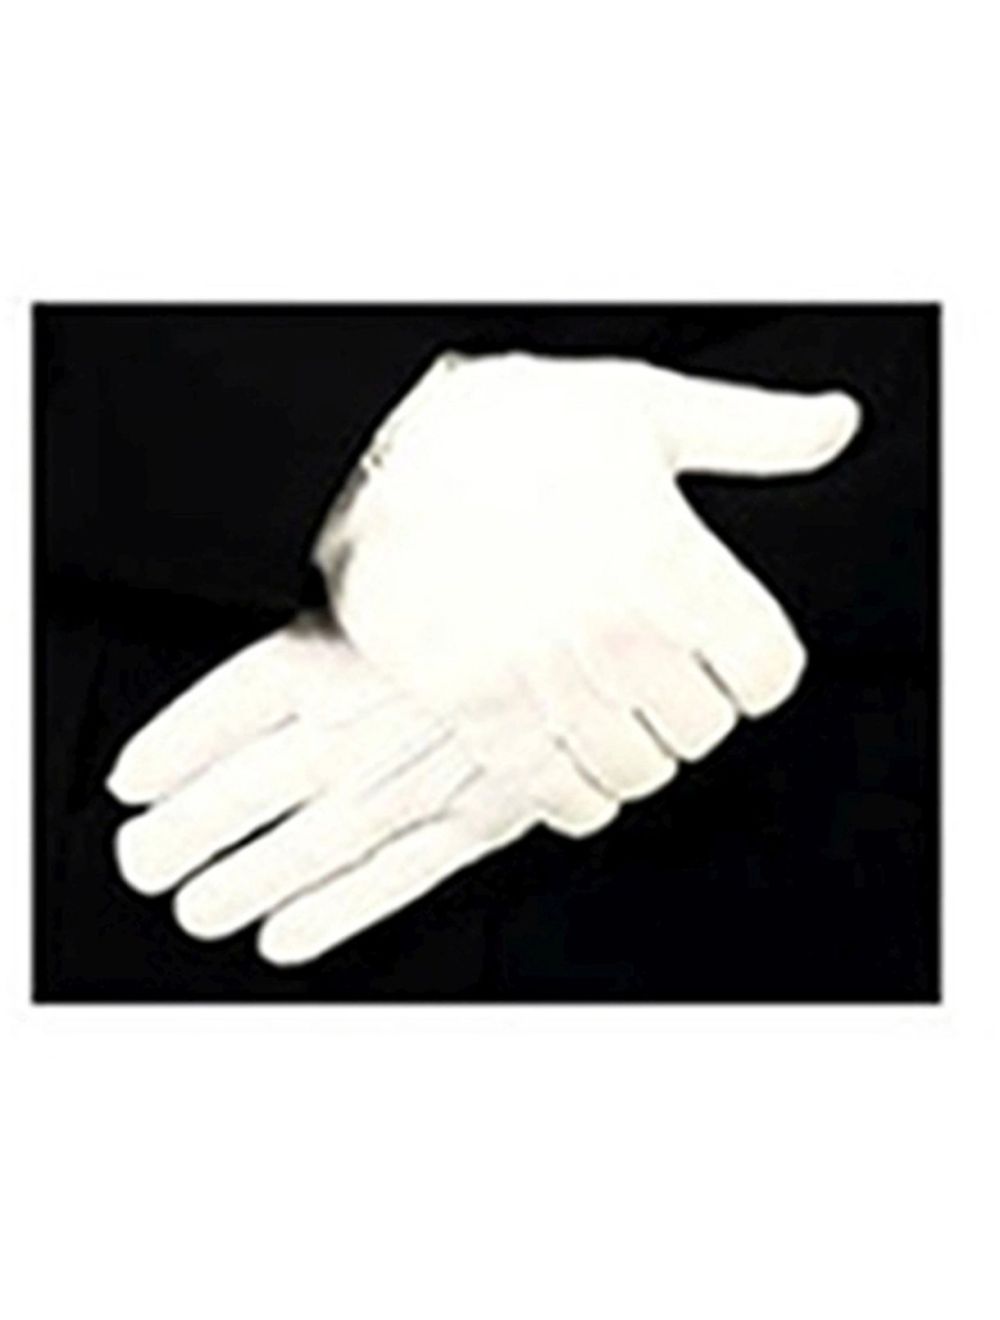 Parade Slip-On Gloves - White